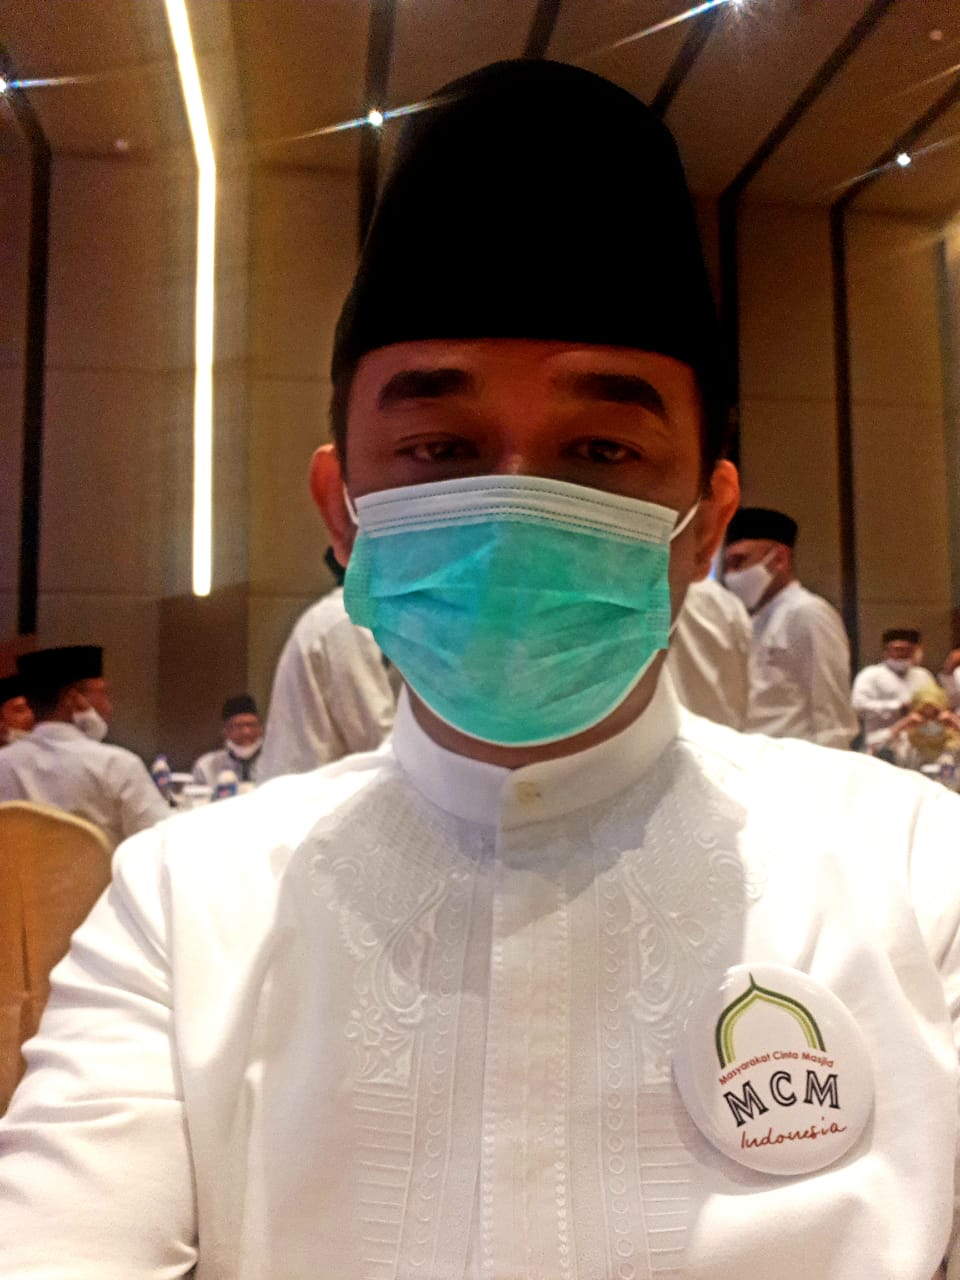 Ketua MCMI Tanjungpinang Apresiasi Hj Rahma Turun ke Masyarakat, Cek Bantuan Covid-19